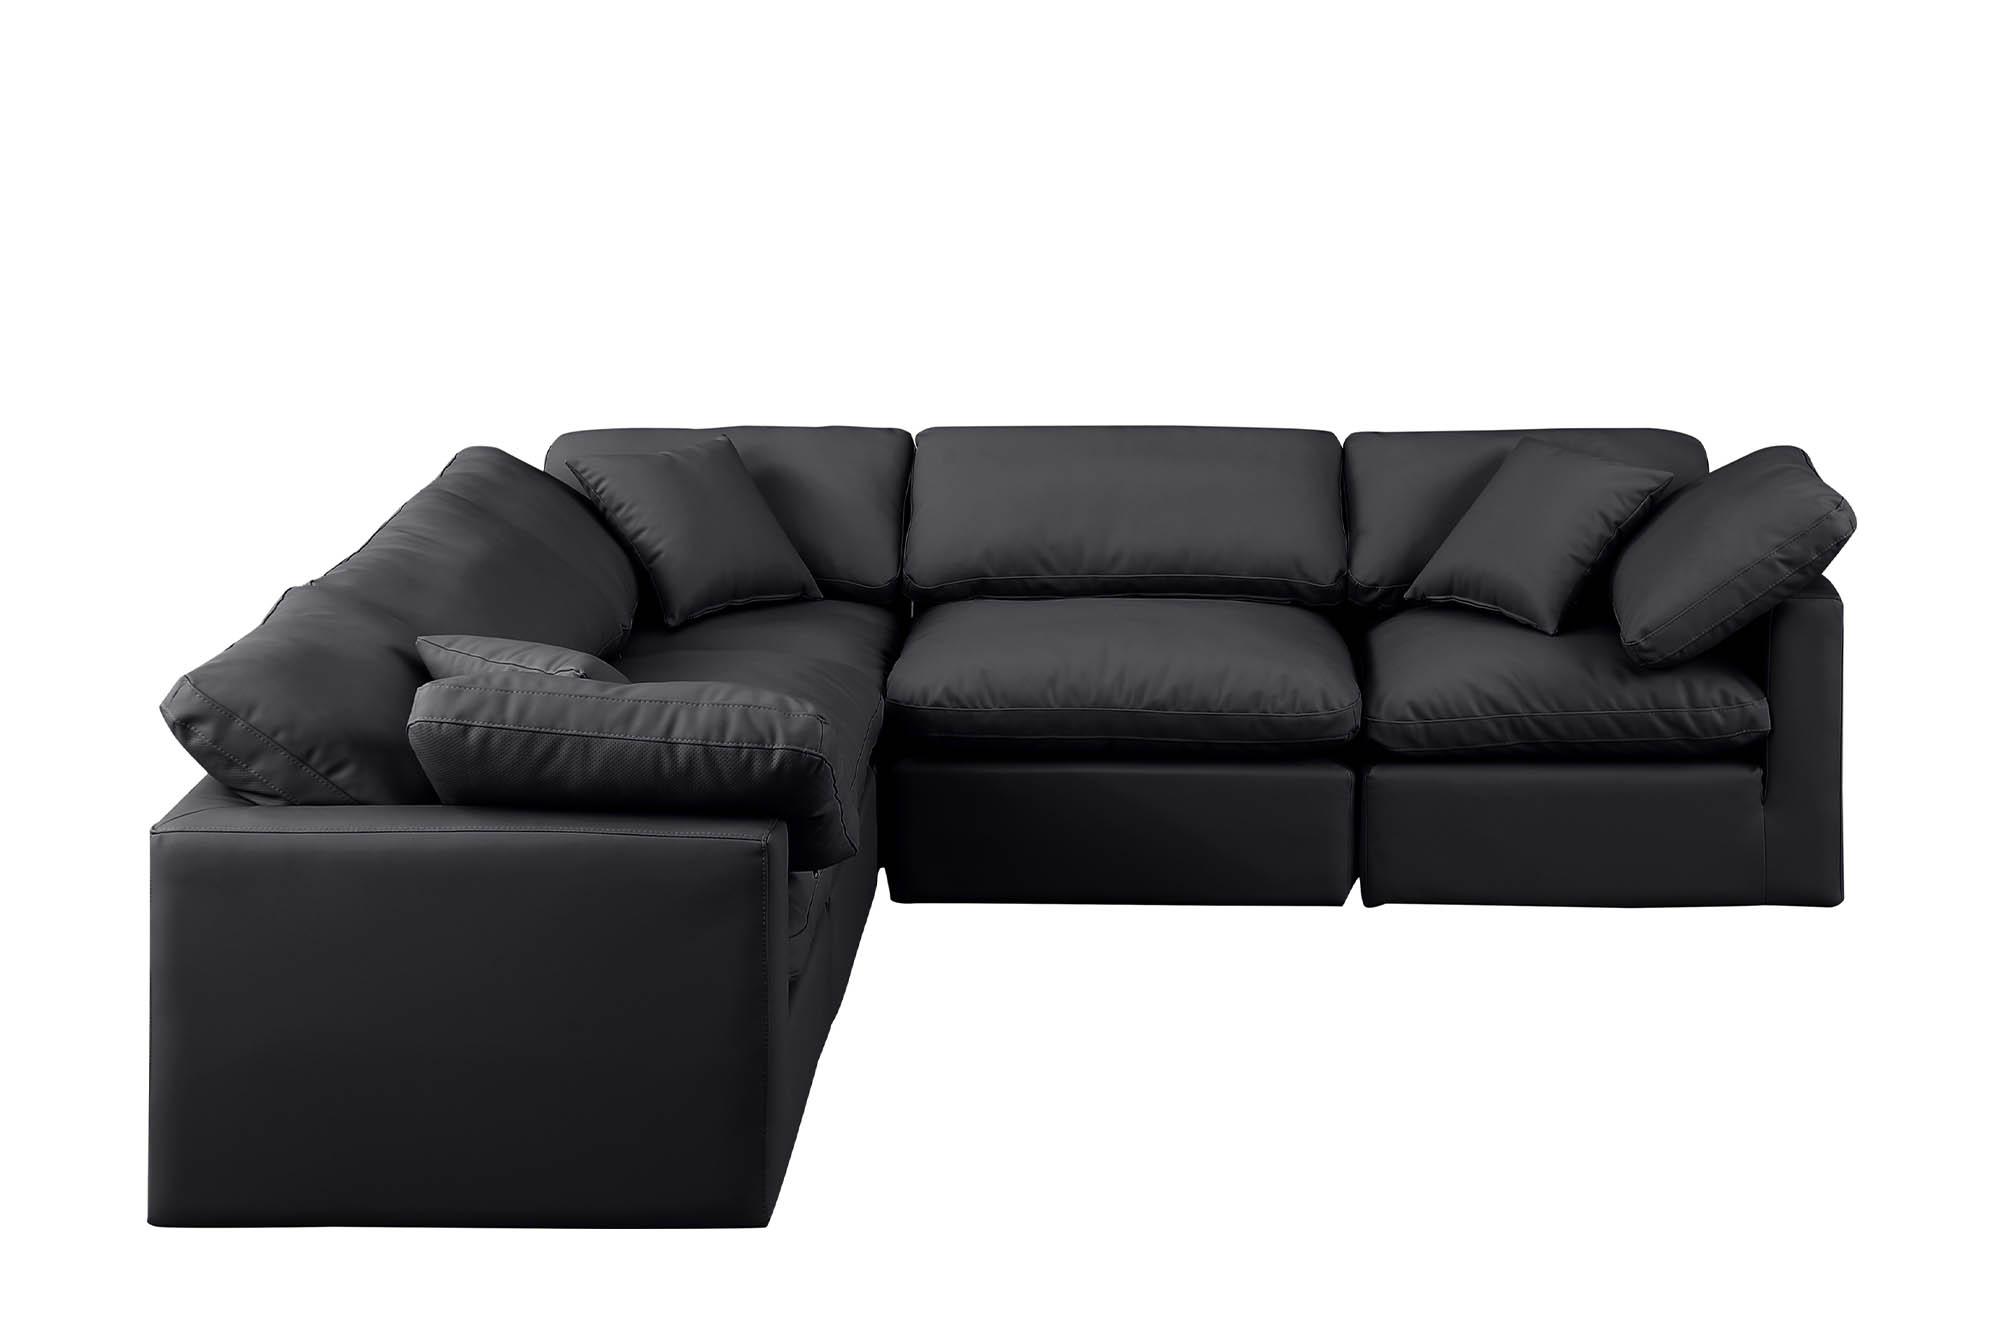 

    
Meridian Furniture INDULGE 146Black-Sec5C Modular Sectional Sofa Black 146Black-Sec5C
